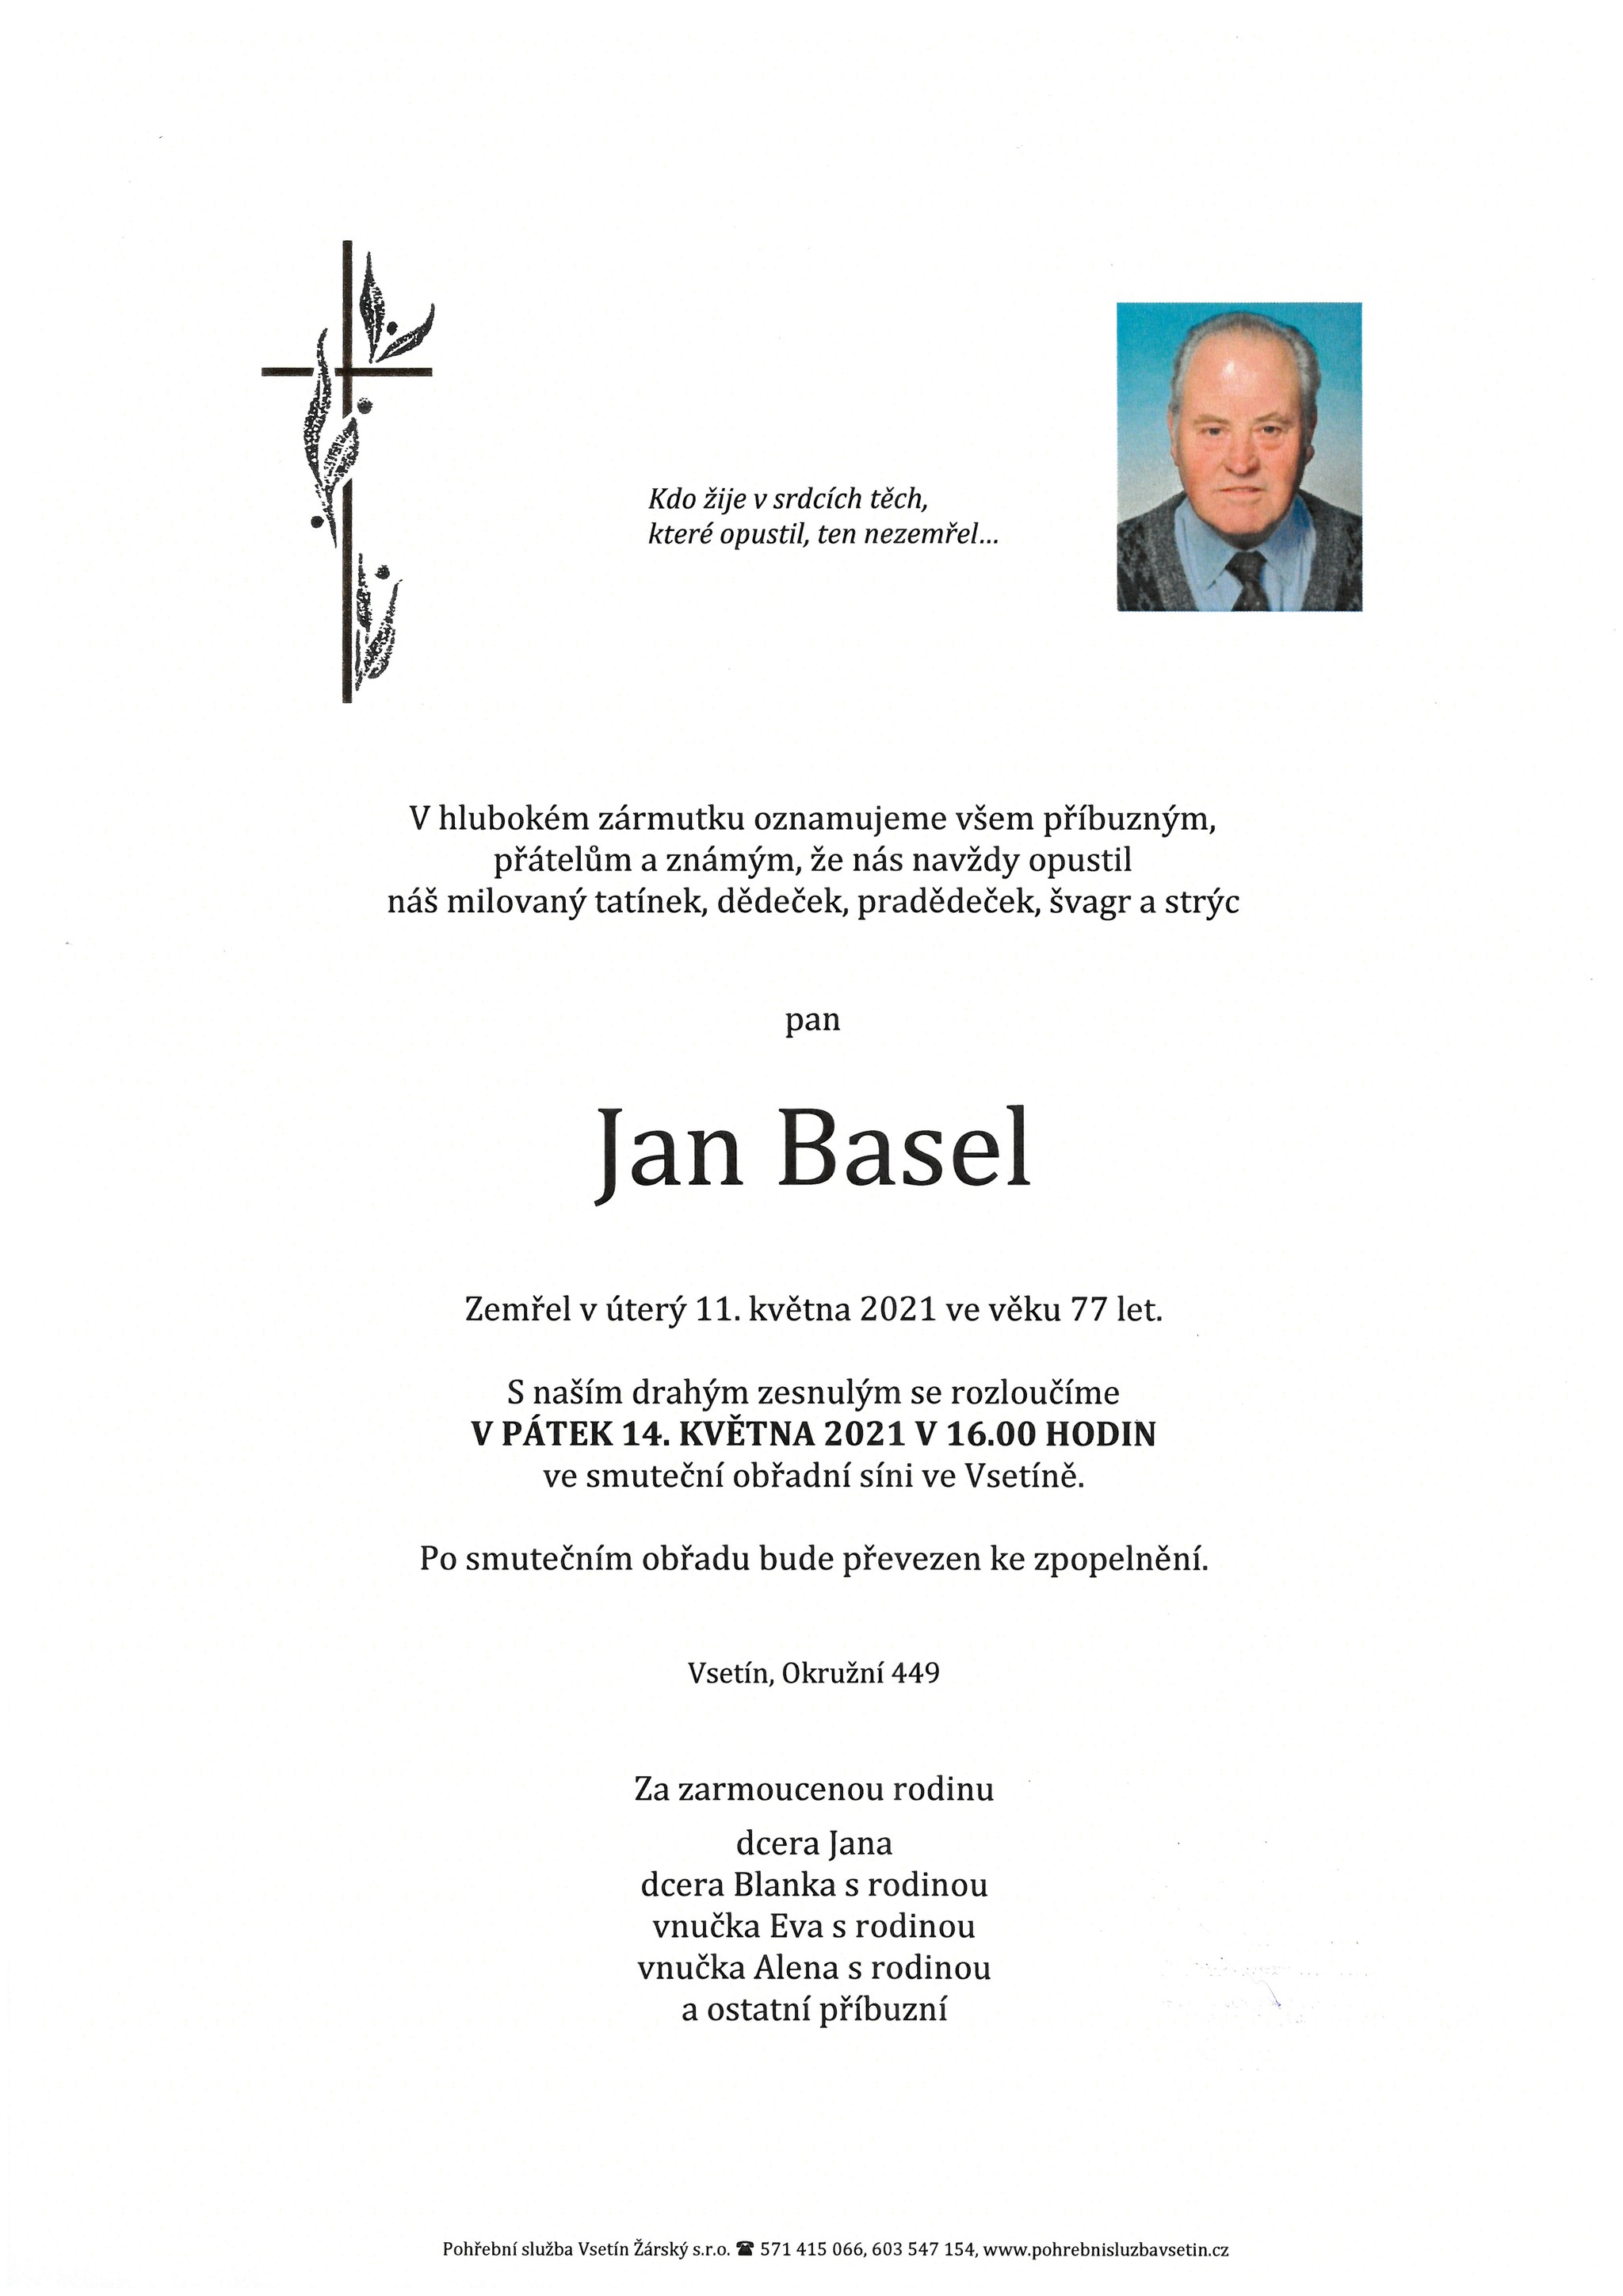 Jan Basel